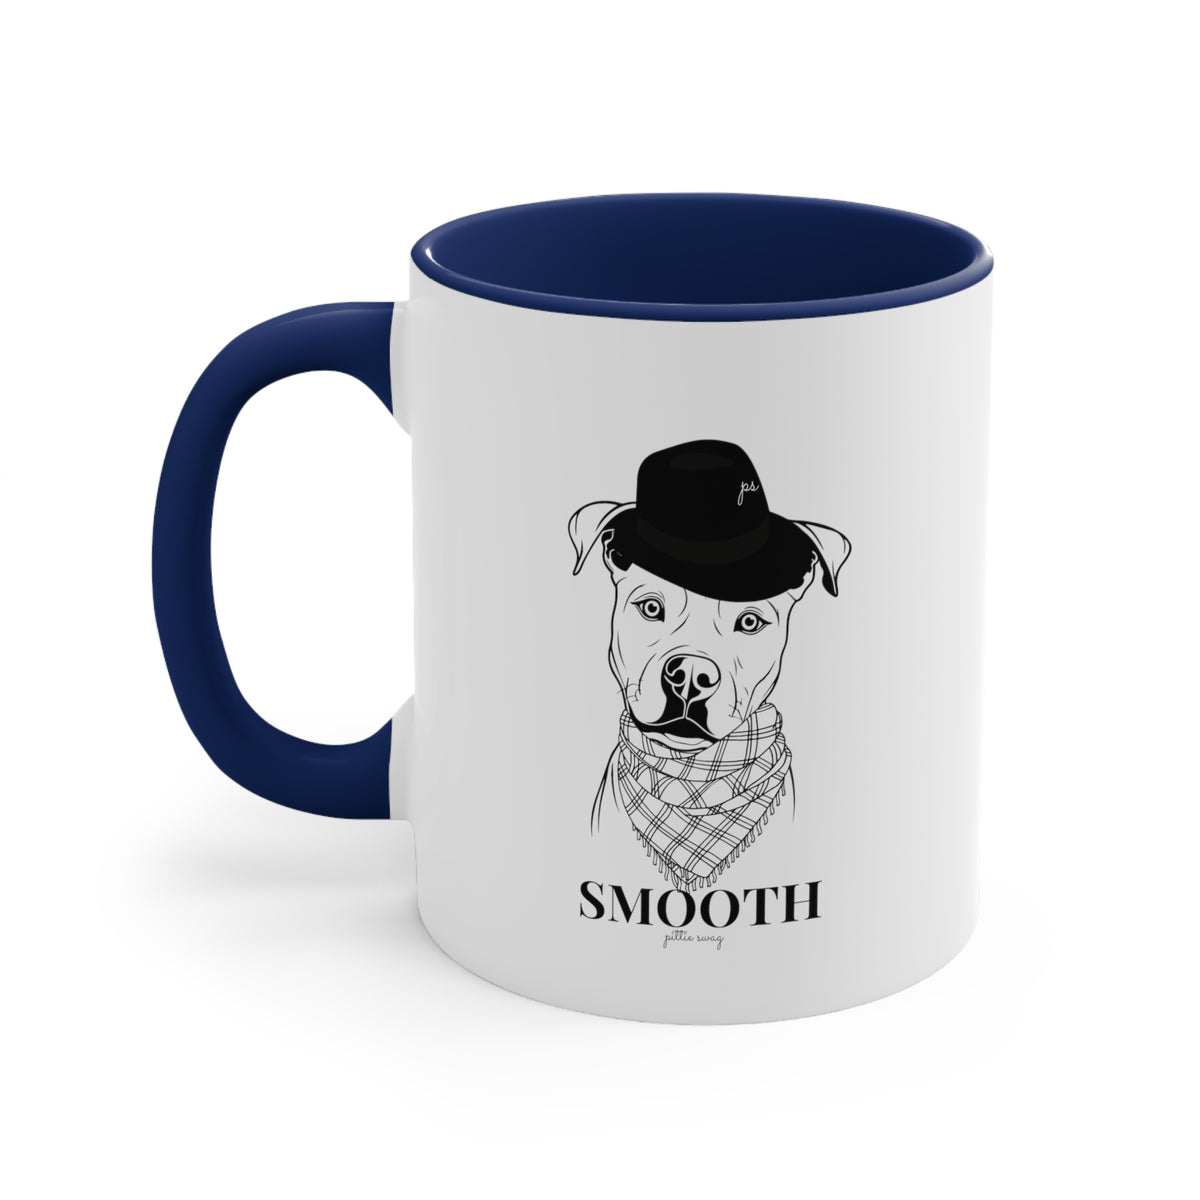 Smooth Coffee Mug, 11oz